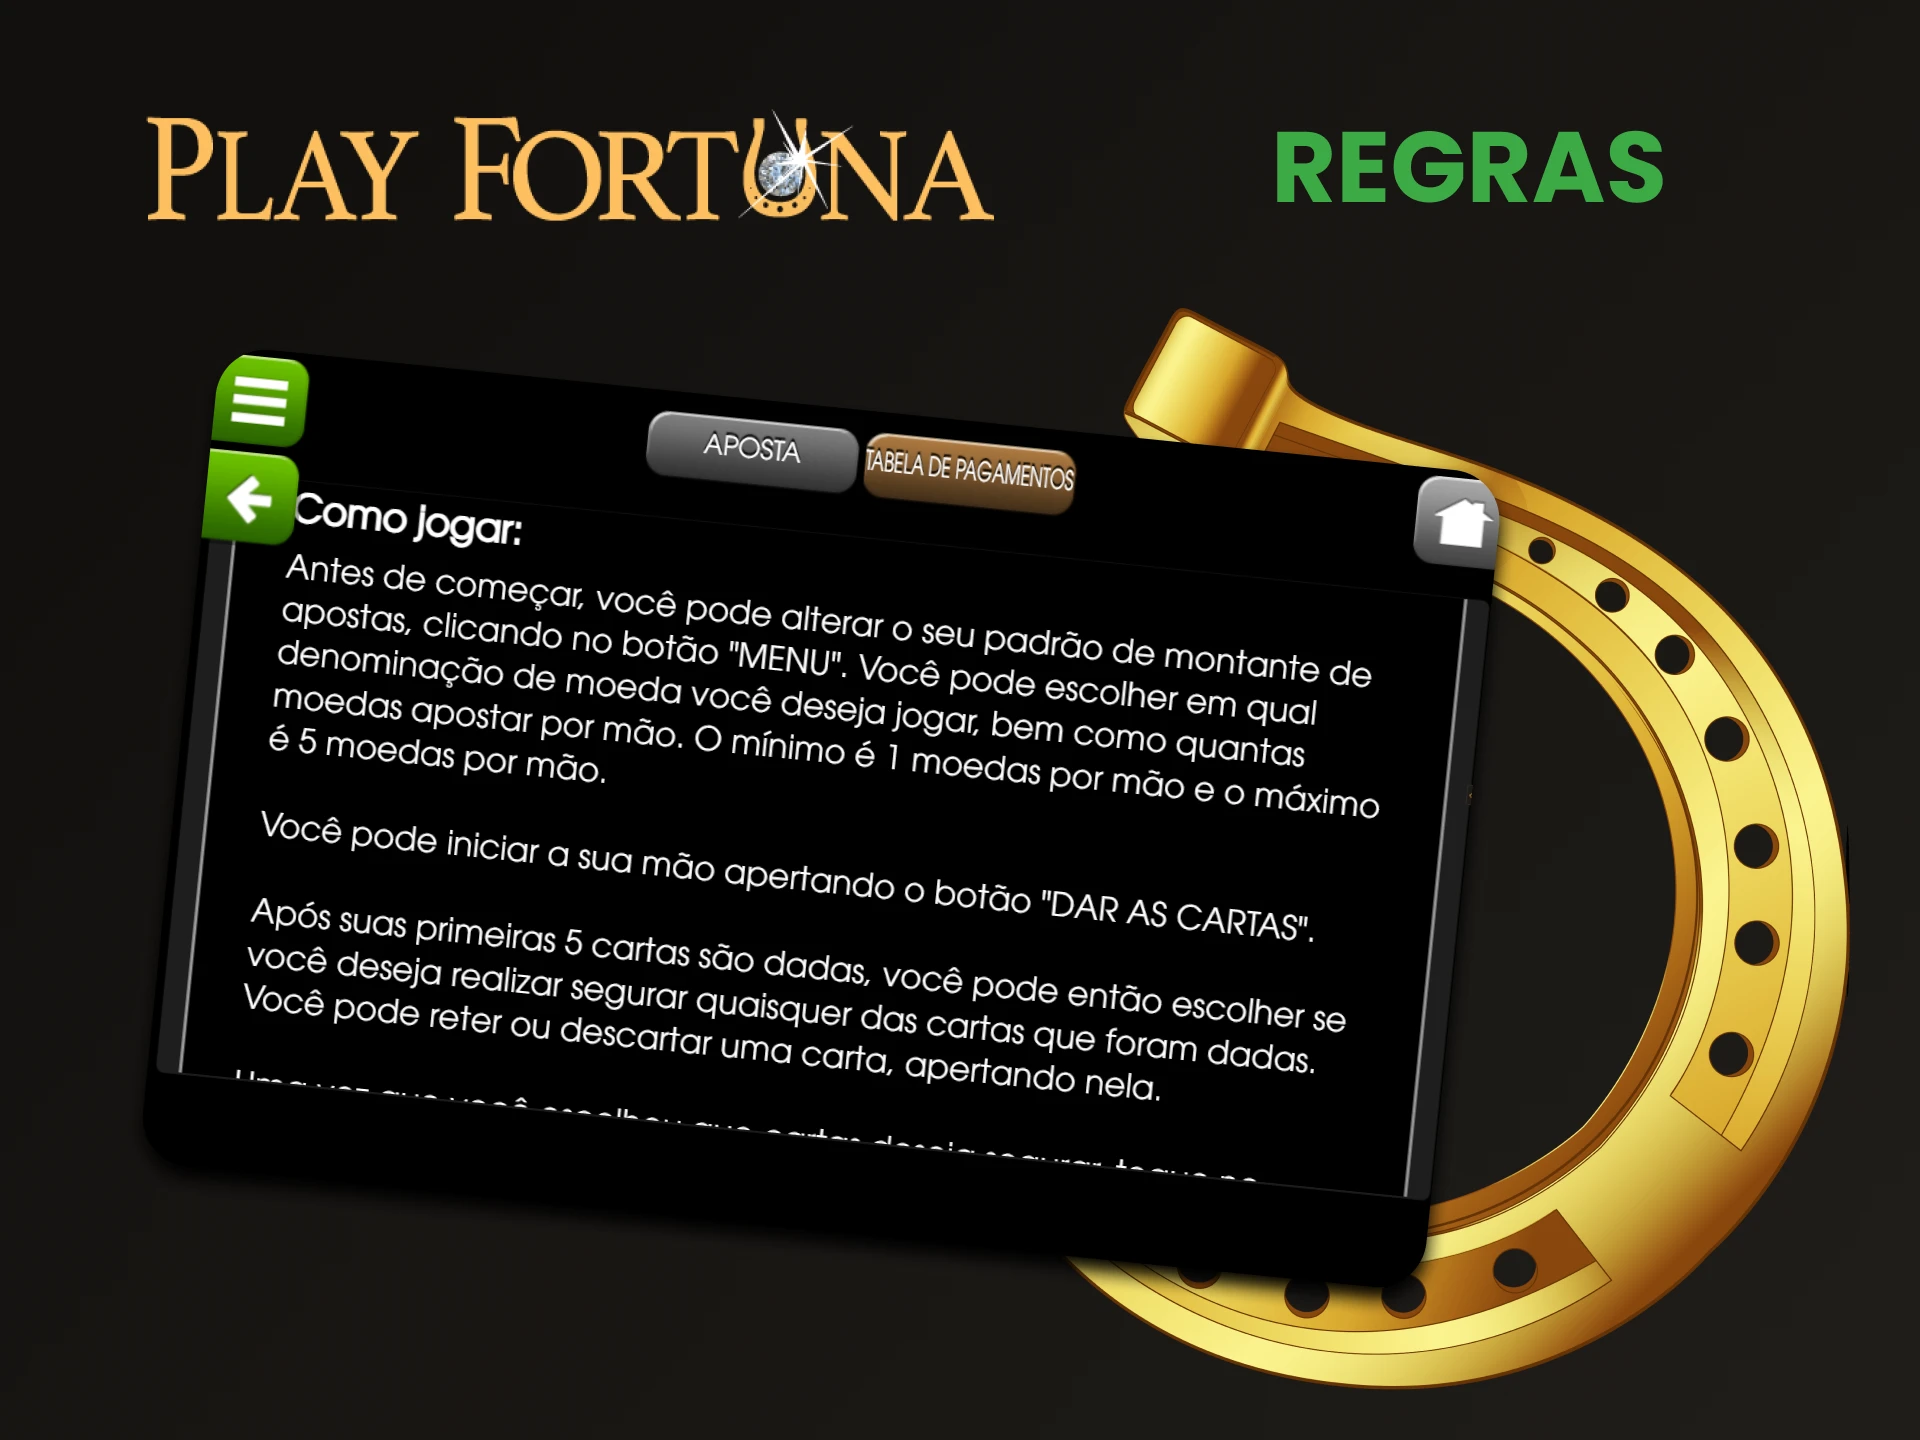 Aprenda as regras para jogar vídeo pôquer no Play Fortuna.